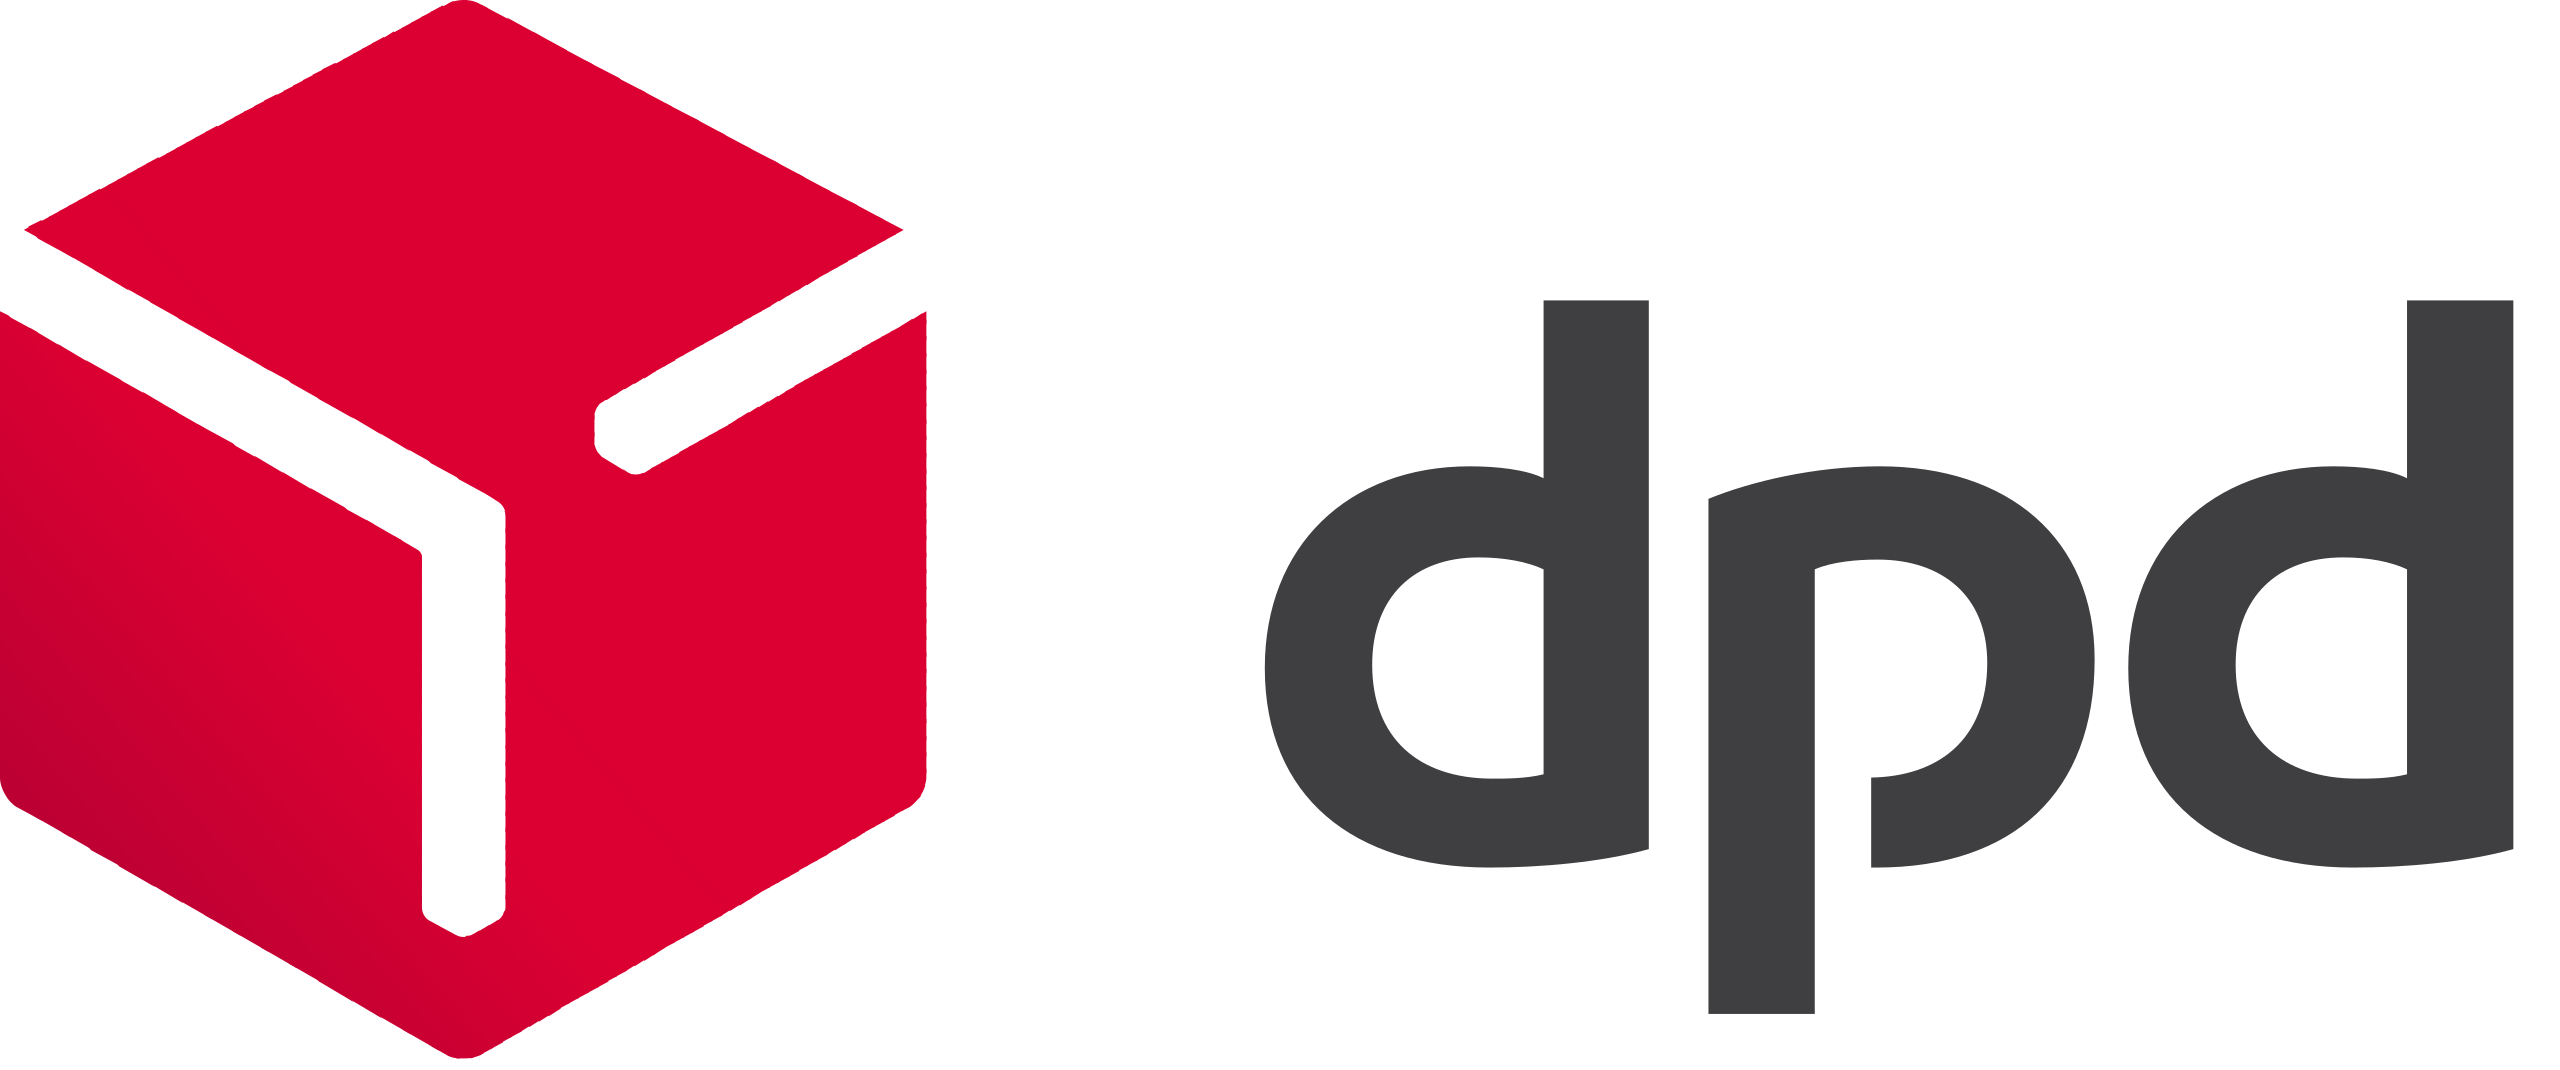 DPD pour international / DPD Für international